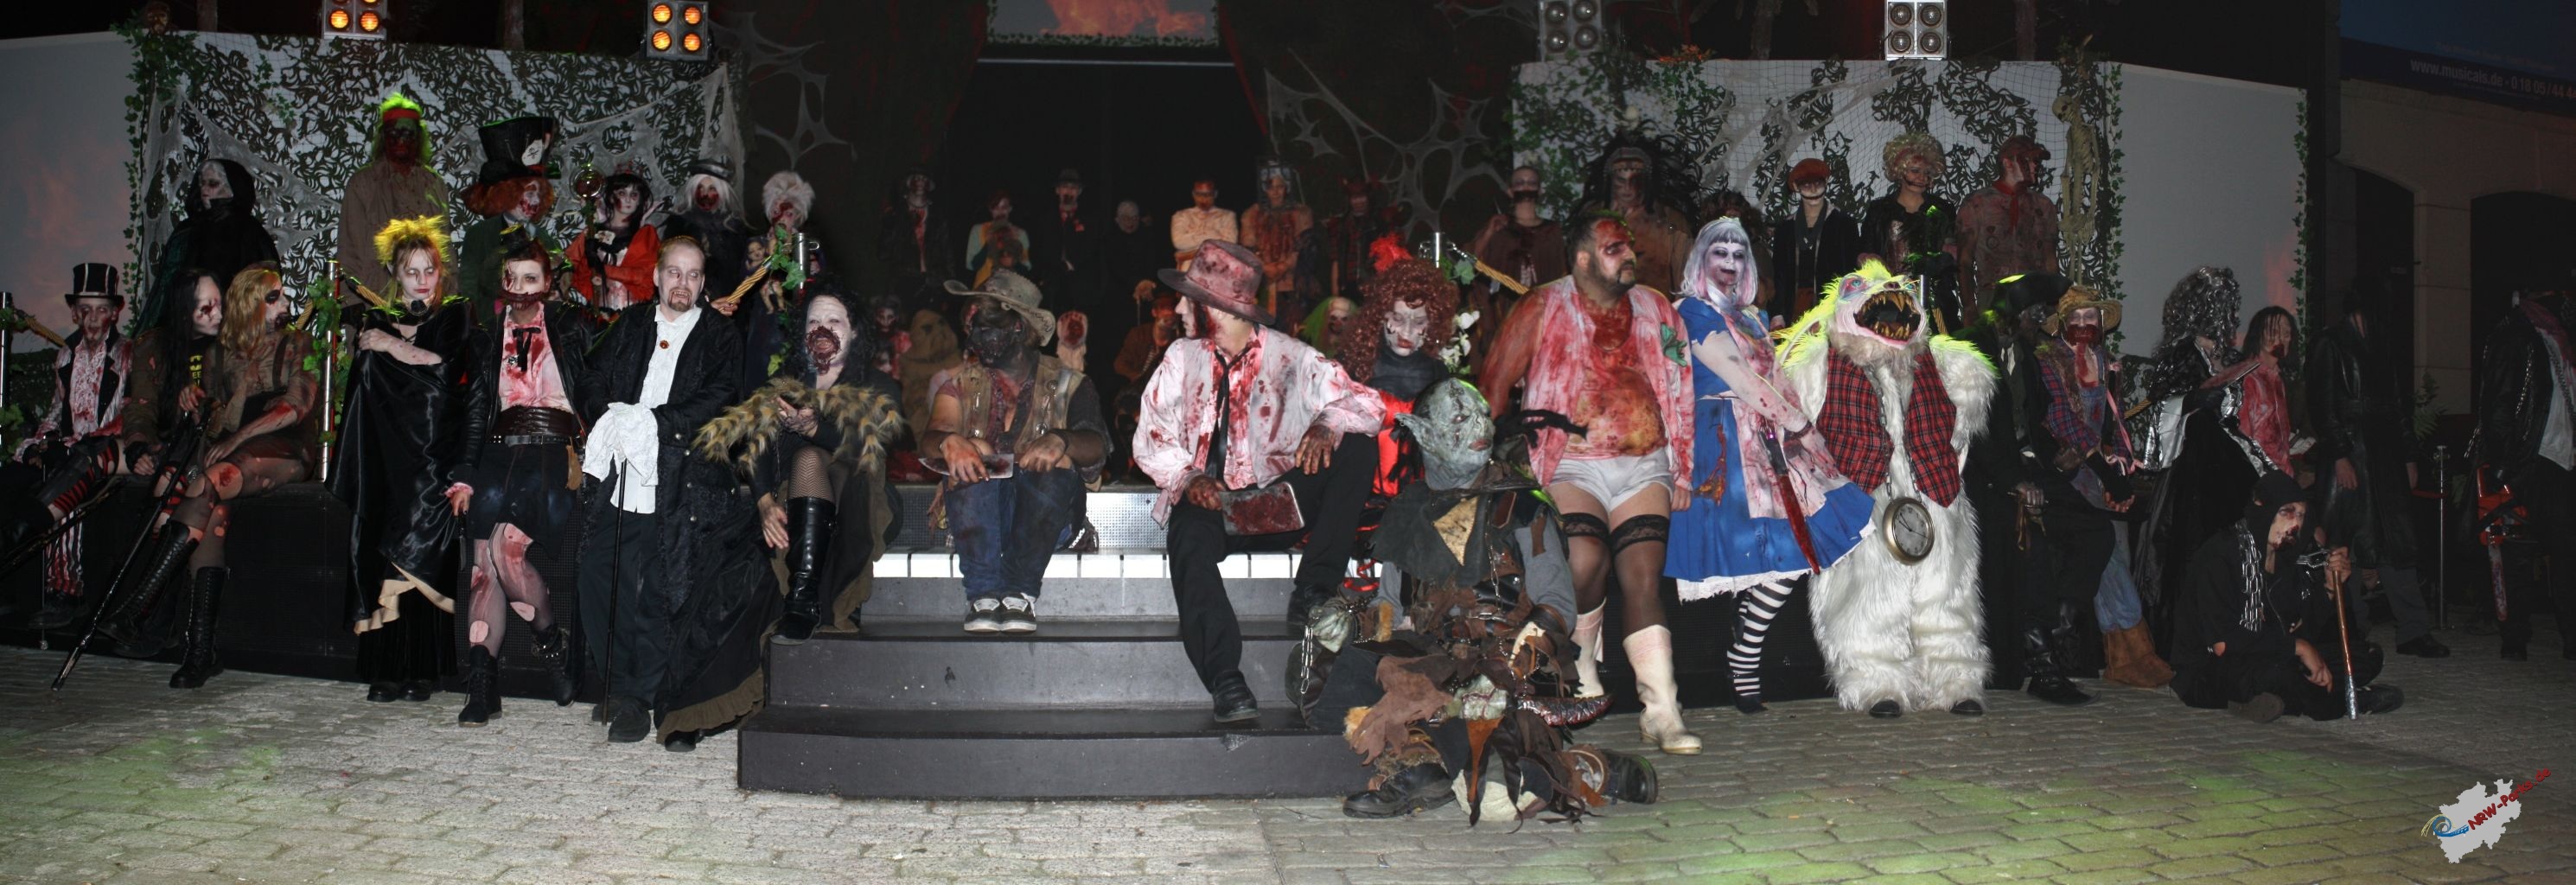 Gruppenfoto der Monster vom Halloween Horror Fest